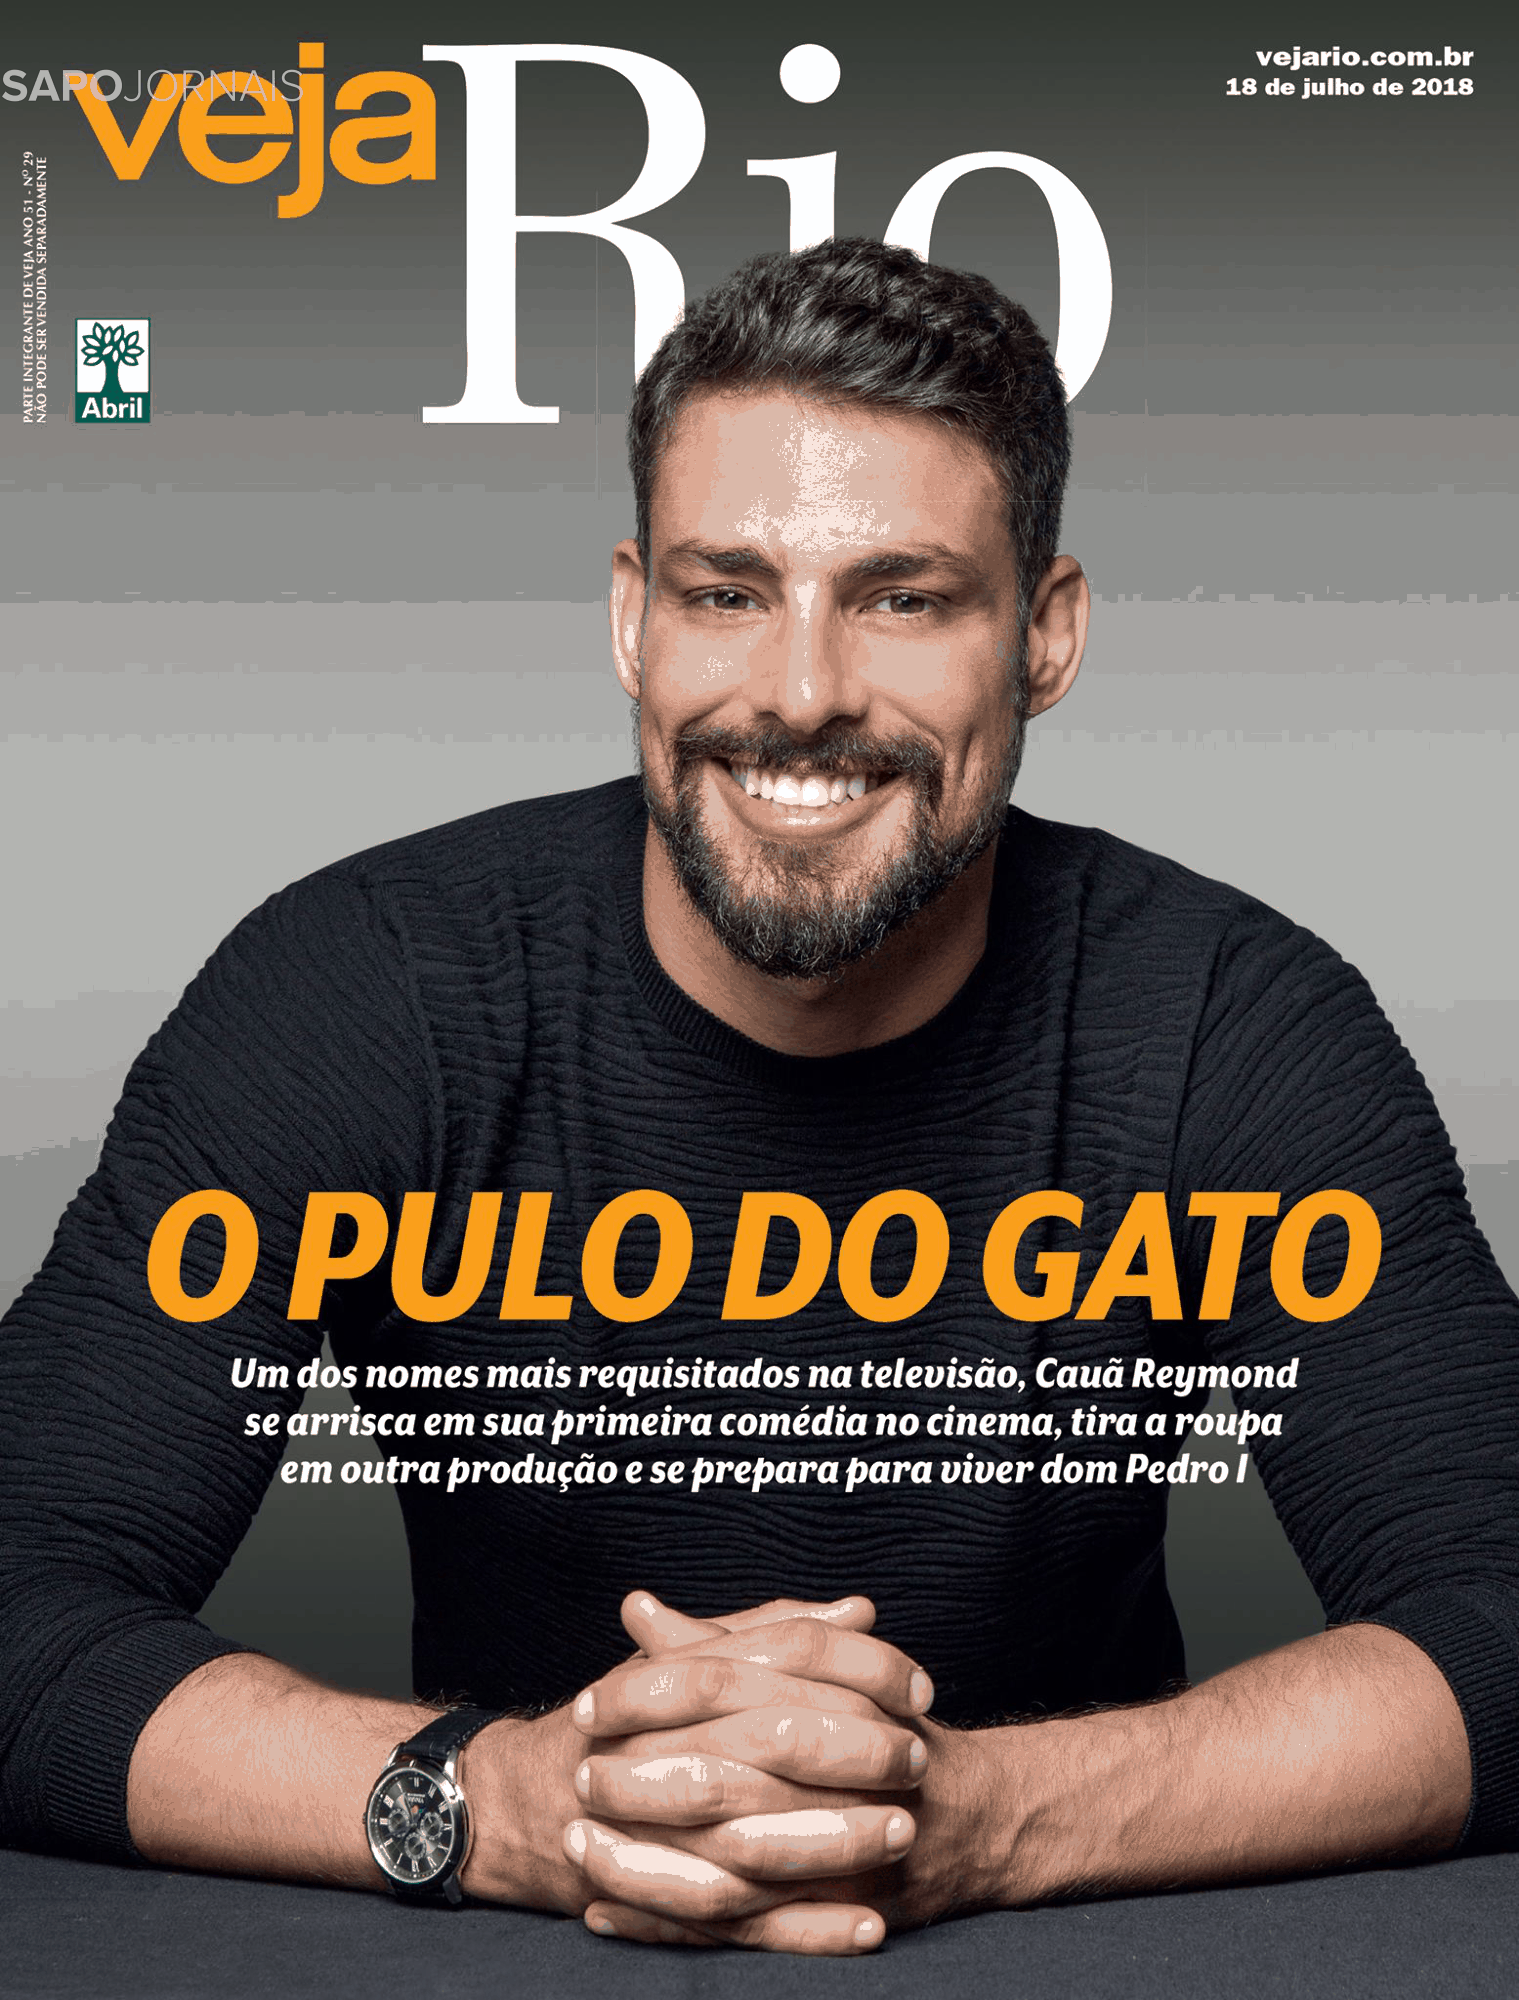 Veja Rio 14 Jul 2018 Jornais E Revistas Sapo 24 4385